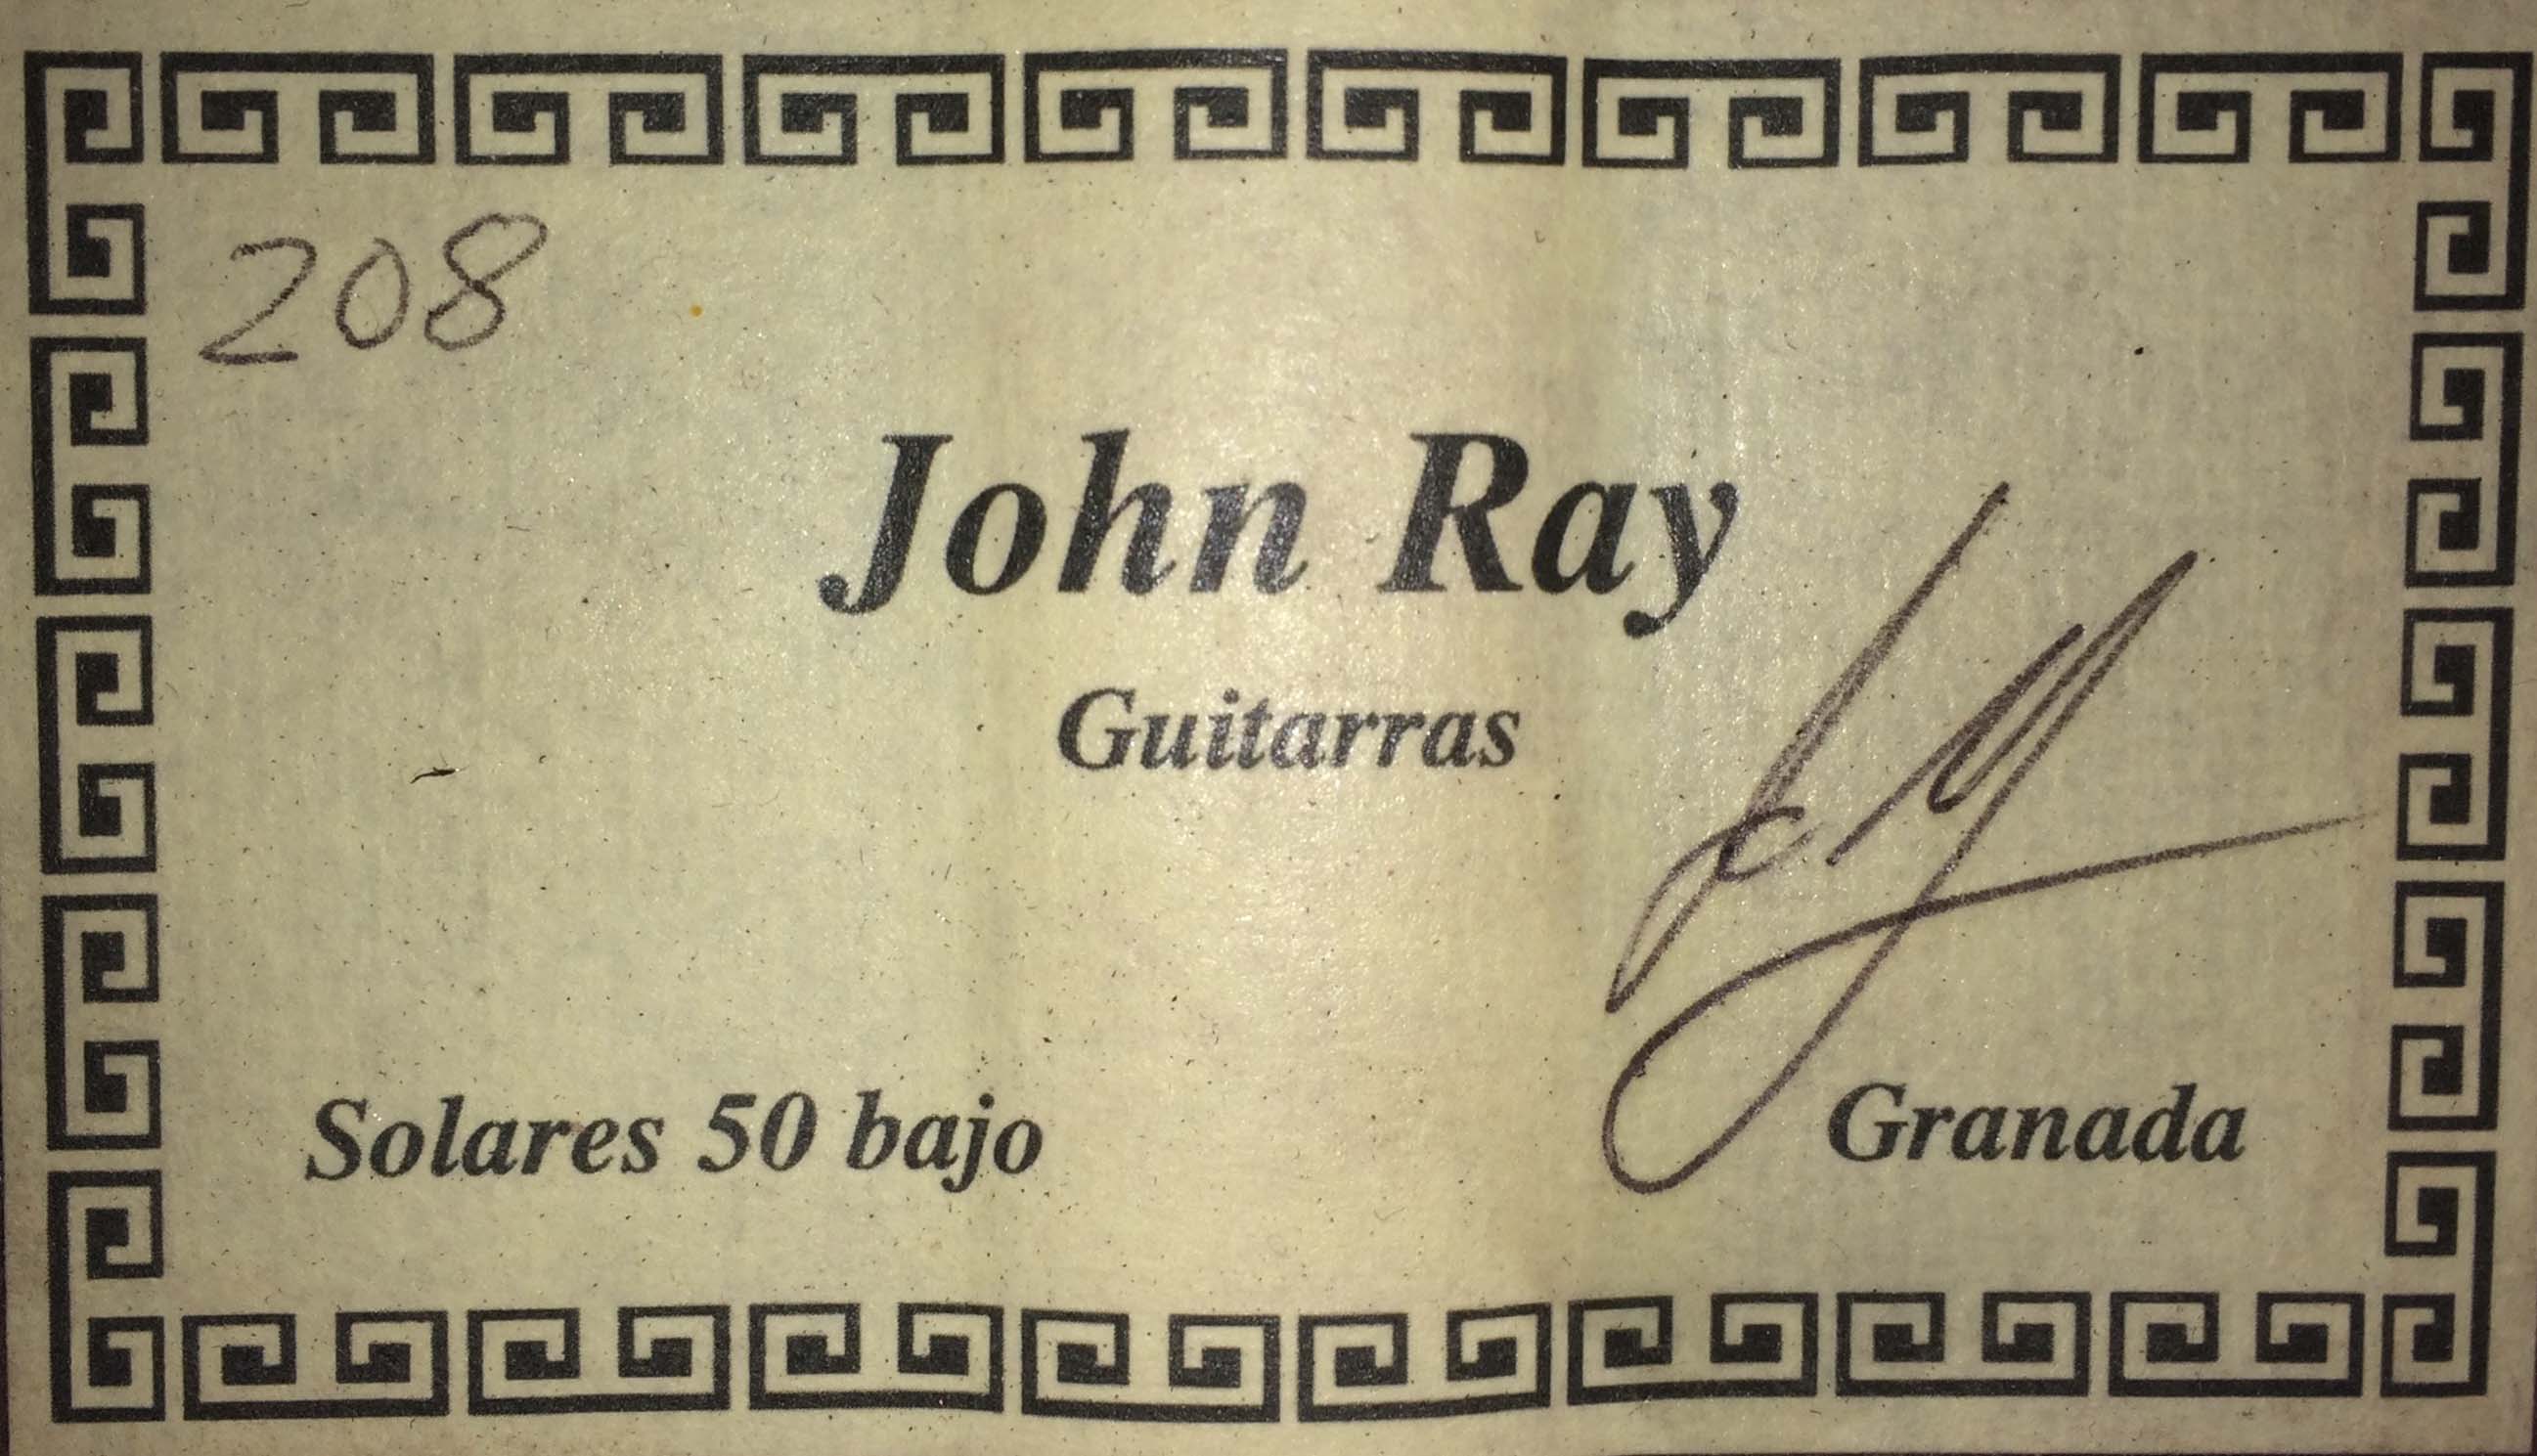 John Ray 2017 10032017 3